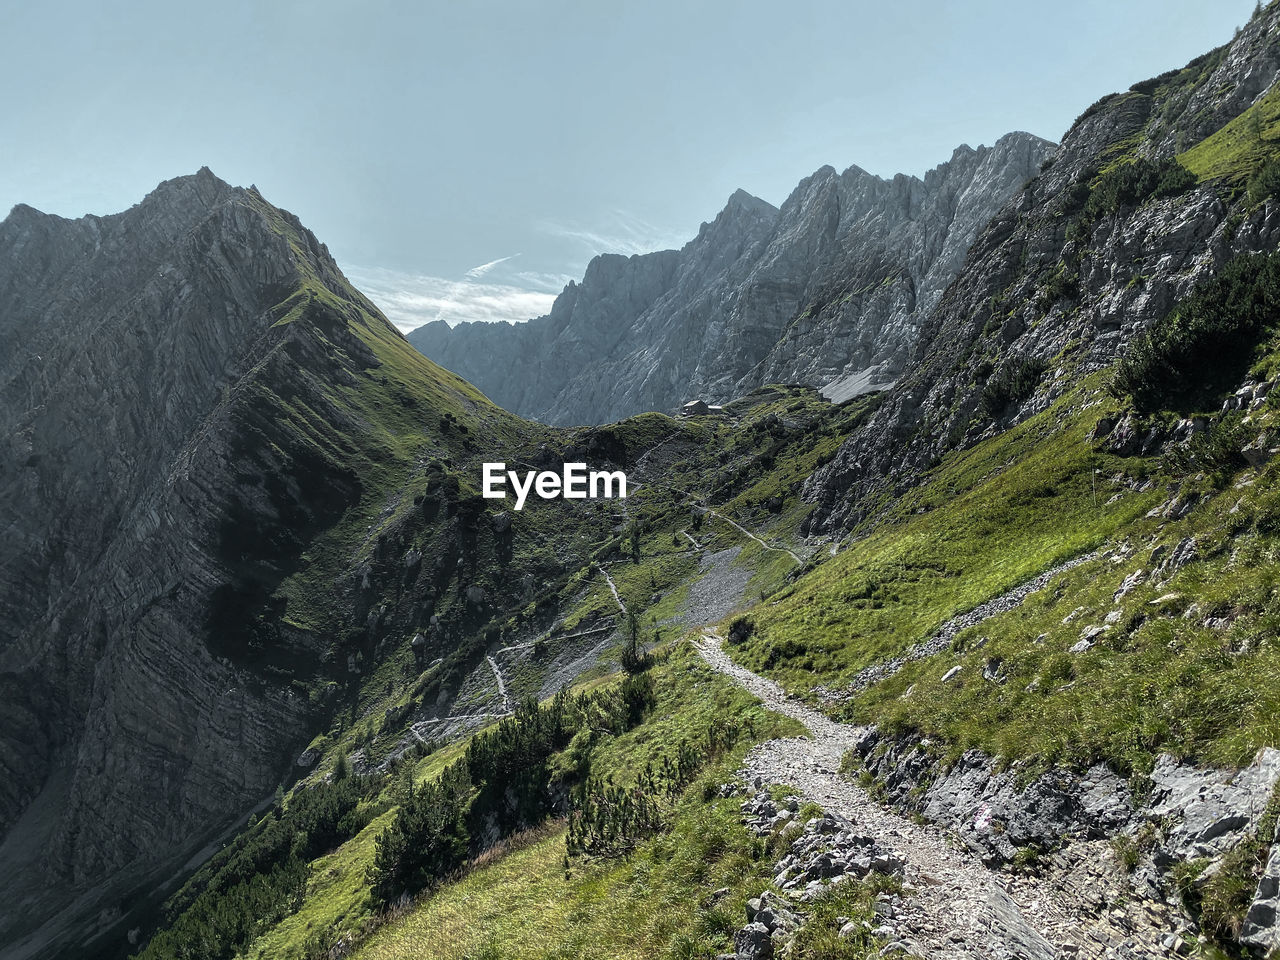 Way to lamsenjochhütte, hiking path, karwendel, tyrol with mountain range